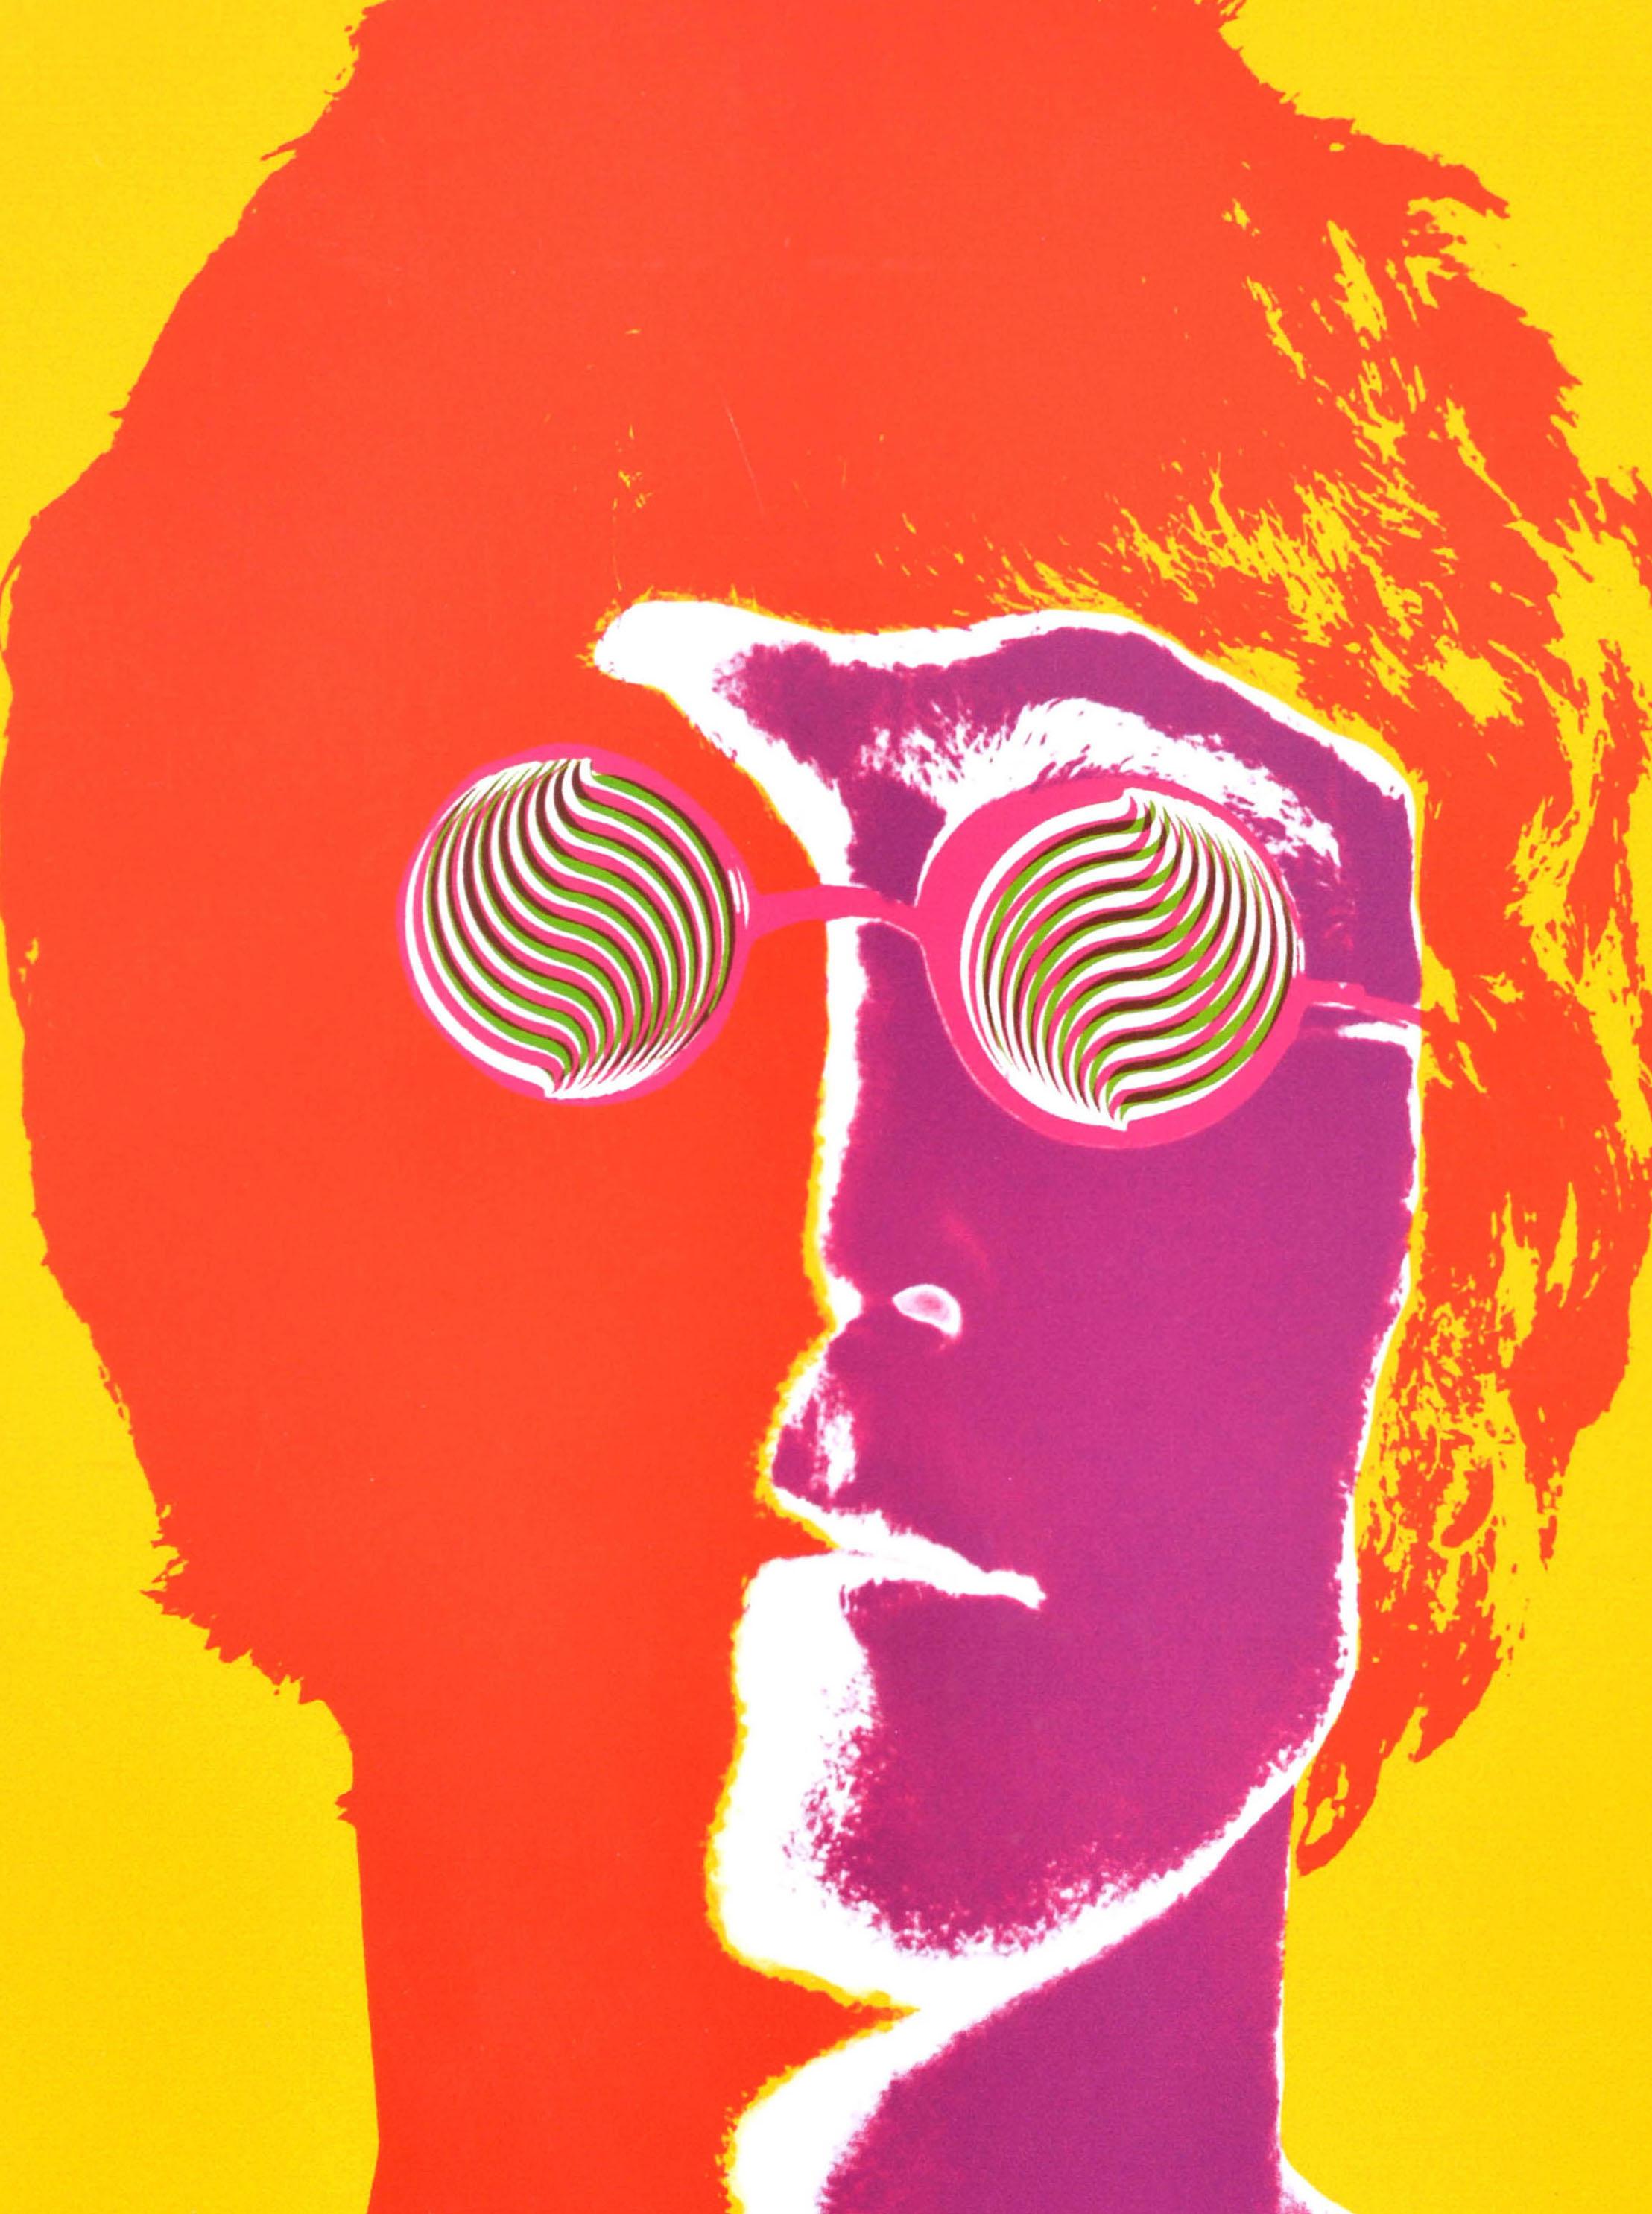 Originales Vintage-Werbeplakat mit einem farbenfrohen und psychedelischen Fotodesign in einer neuen Solarisationstechnik des amerikanischen Fotografen Richard Avedon (1923-2004), das den Beatles-Musiker und Singer-Songwriter John Lennon (John